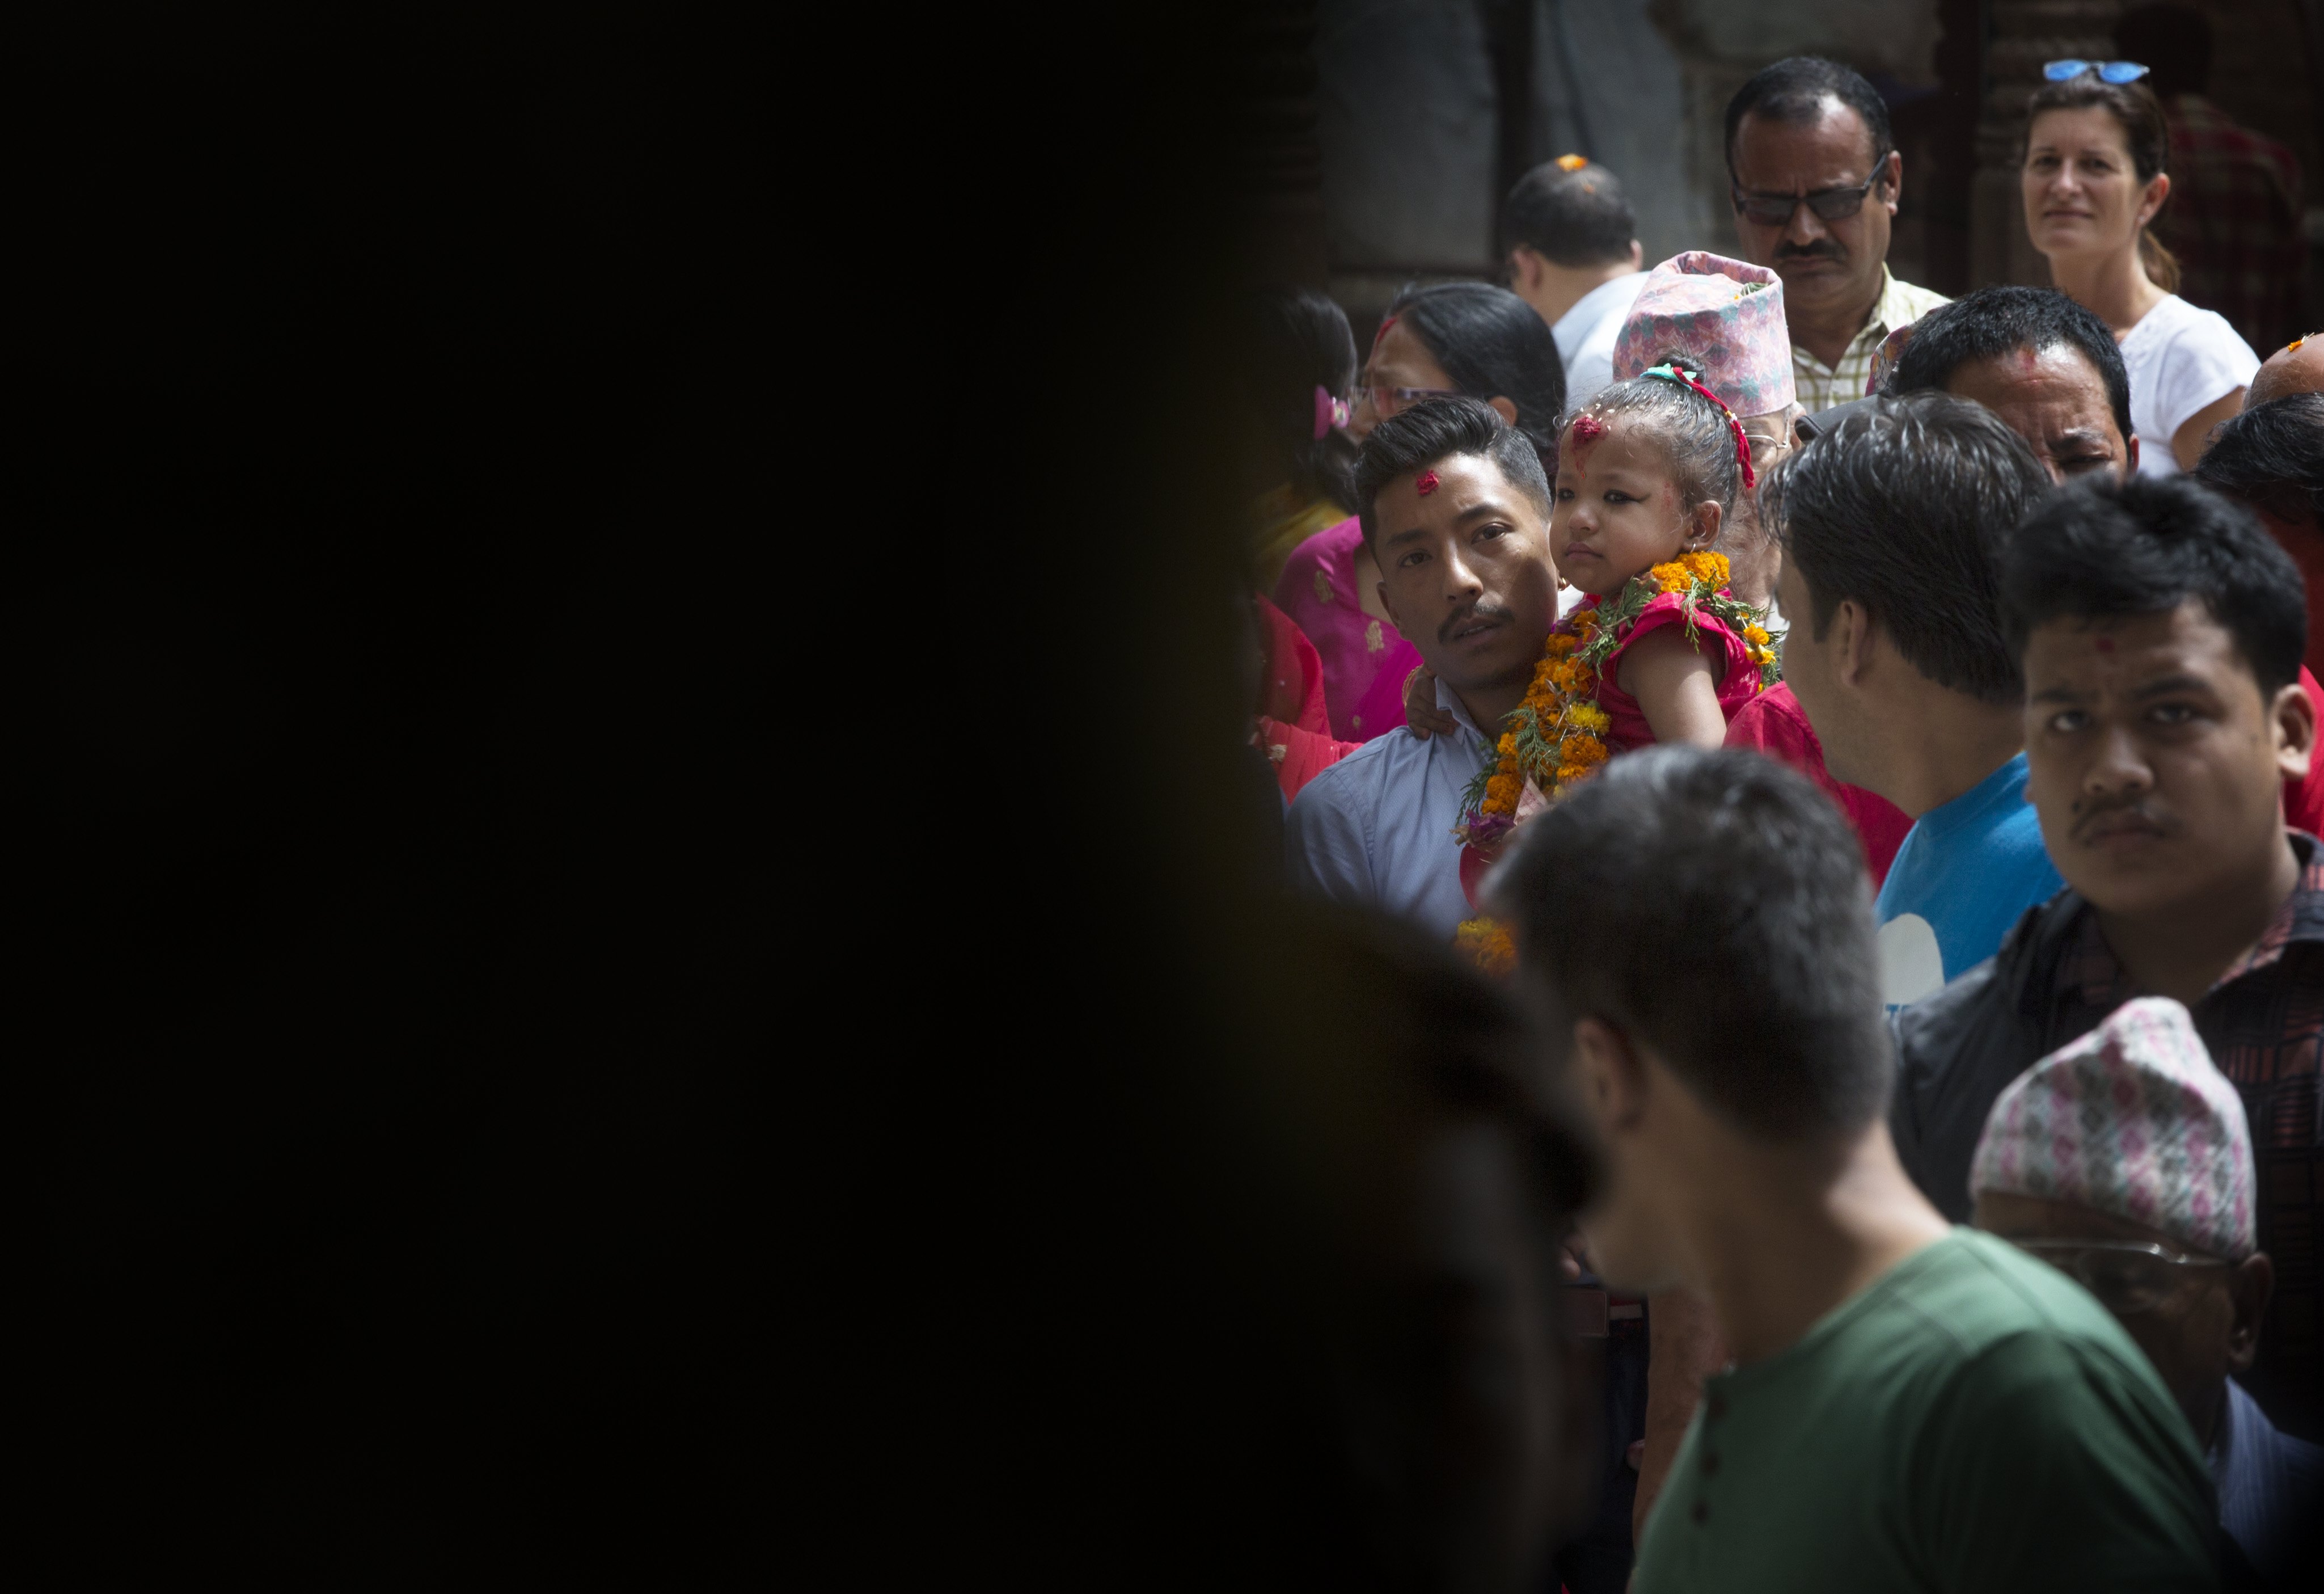 Тригодишната Тришна Шакия стана новата жива богиня на Непал и ще бъде почитана както от индуистите, така и от будистите, предаде Асошиейтед прес. Новата жива богиня беше отнесена с религиозна церемония до храма-дворец в сърцето на непалската столица, където ще живее до пубертета си. Стотици хора се струпаха, за да видят момичето, облечено в червена рокля и нагиздено с гирлянди от цветя.